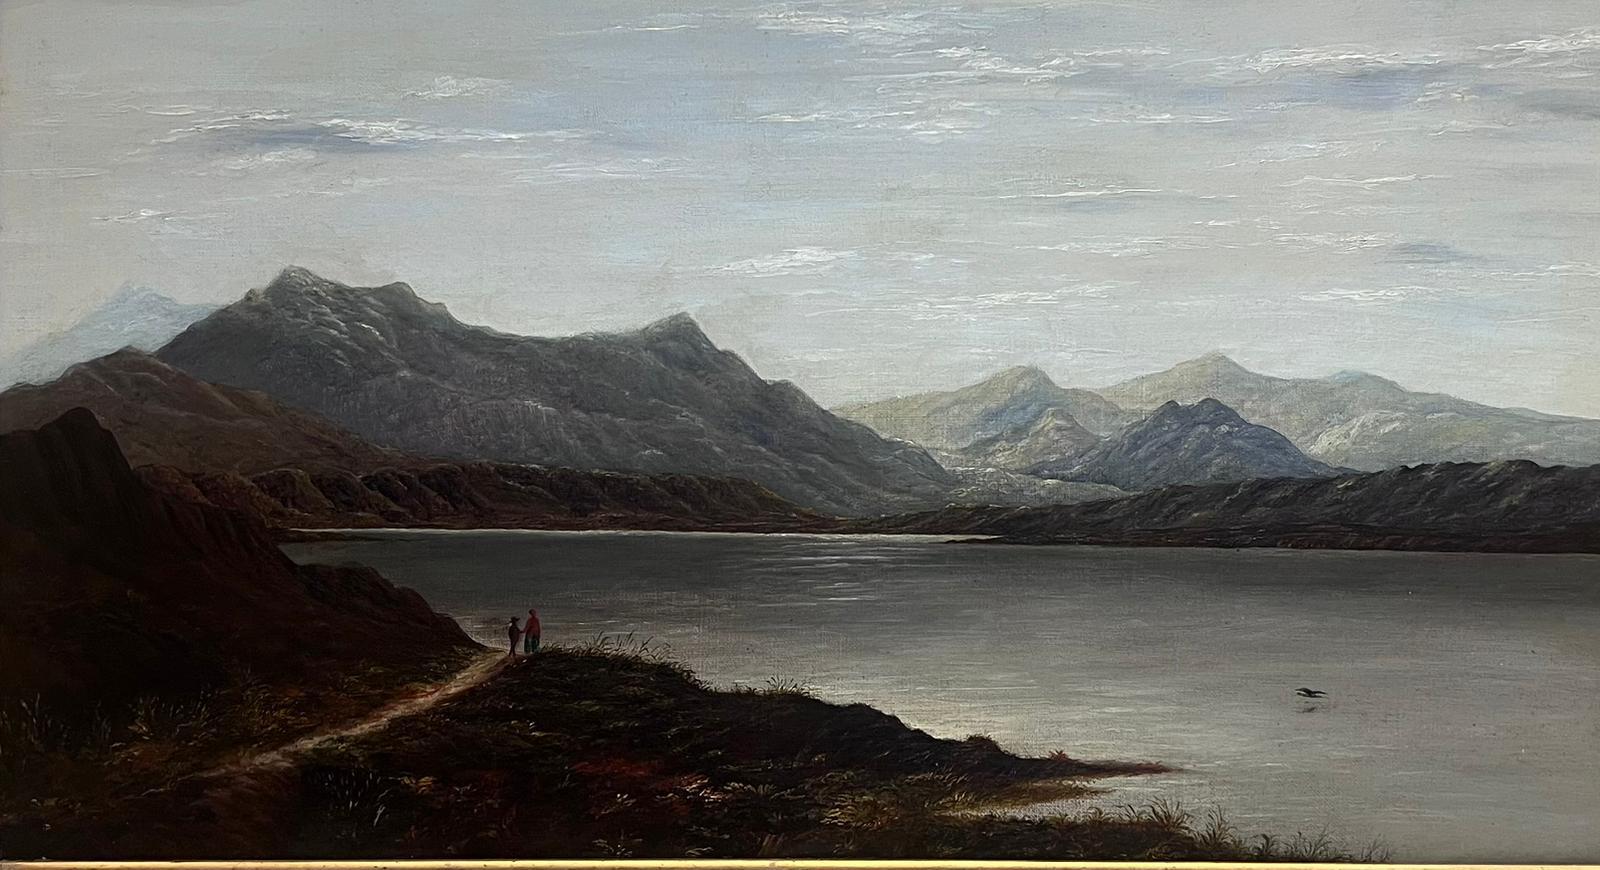 Paysage Panoramic écossais du 19ème siècle représentant une scène de Loch dans un cadre doré - Painting de Charles Leslie